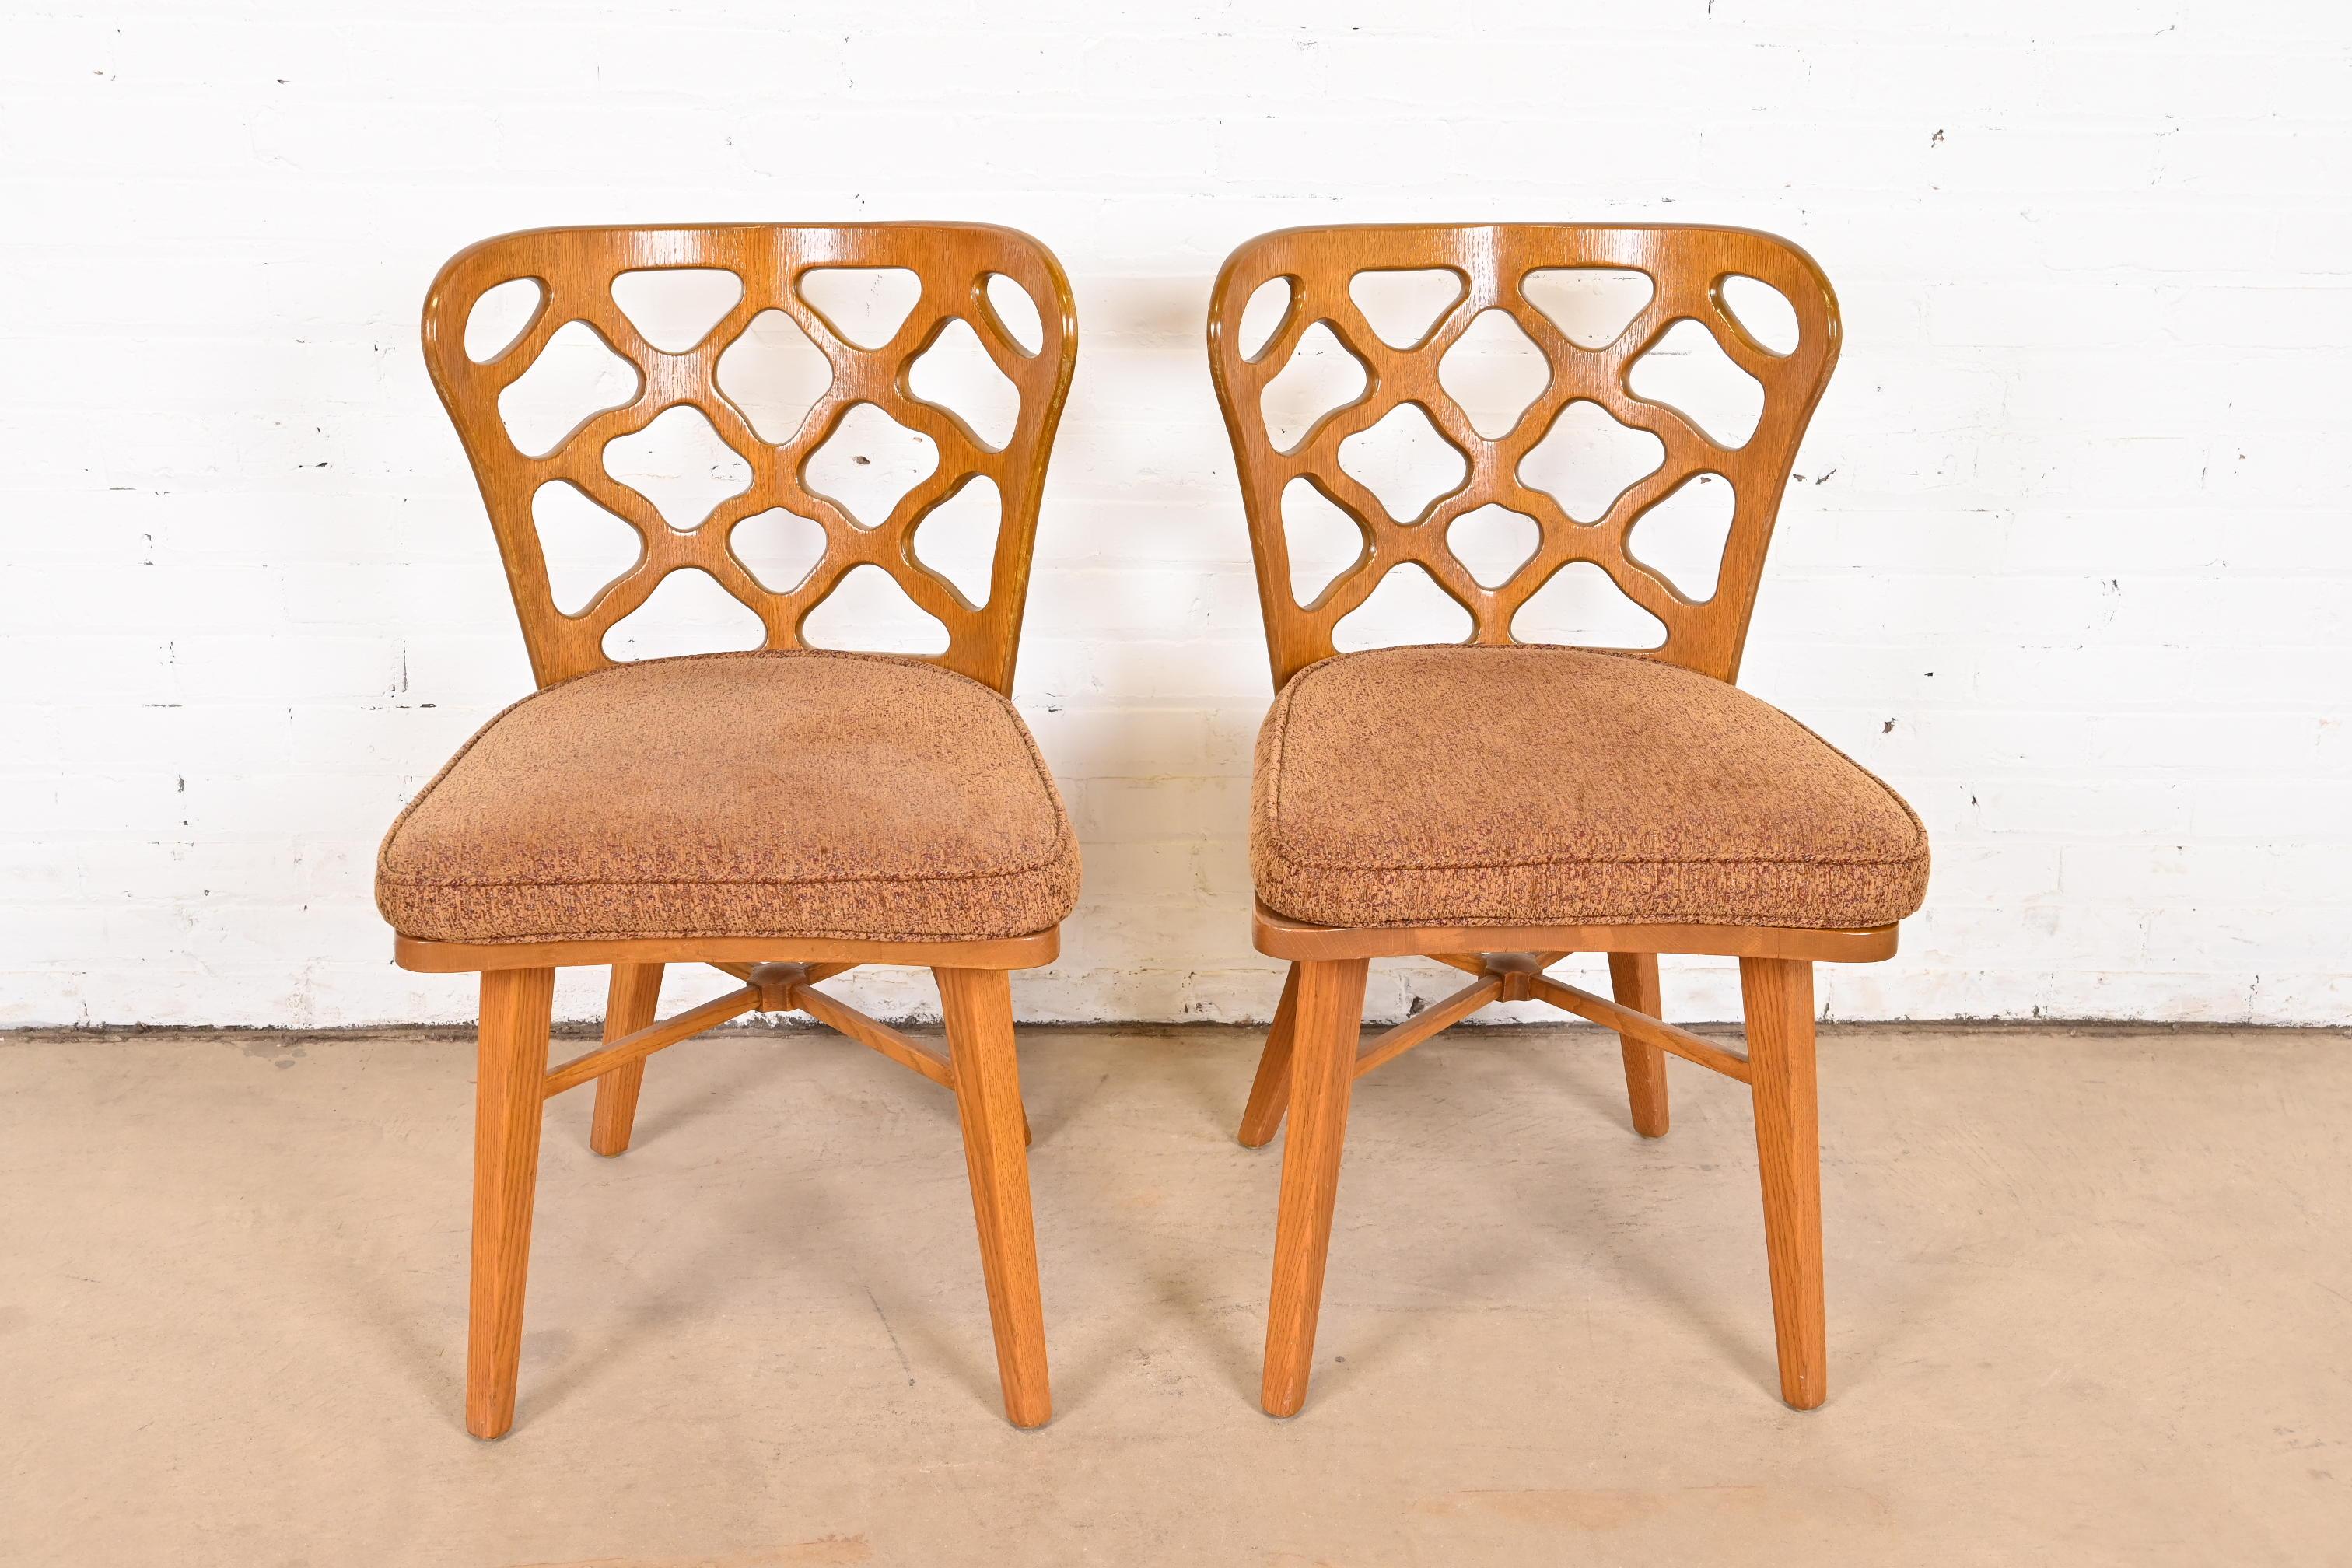 Une magnifique paire de chaises d'appoint ou de chaises de salle à manger sculpturales du milieu du siècle dernier.

Par Harold Schwartz pour Romweber

États-Unis, années 1950

Chêne sculpté, avec sièges rembourrés.

Dimensions : 19,75 